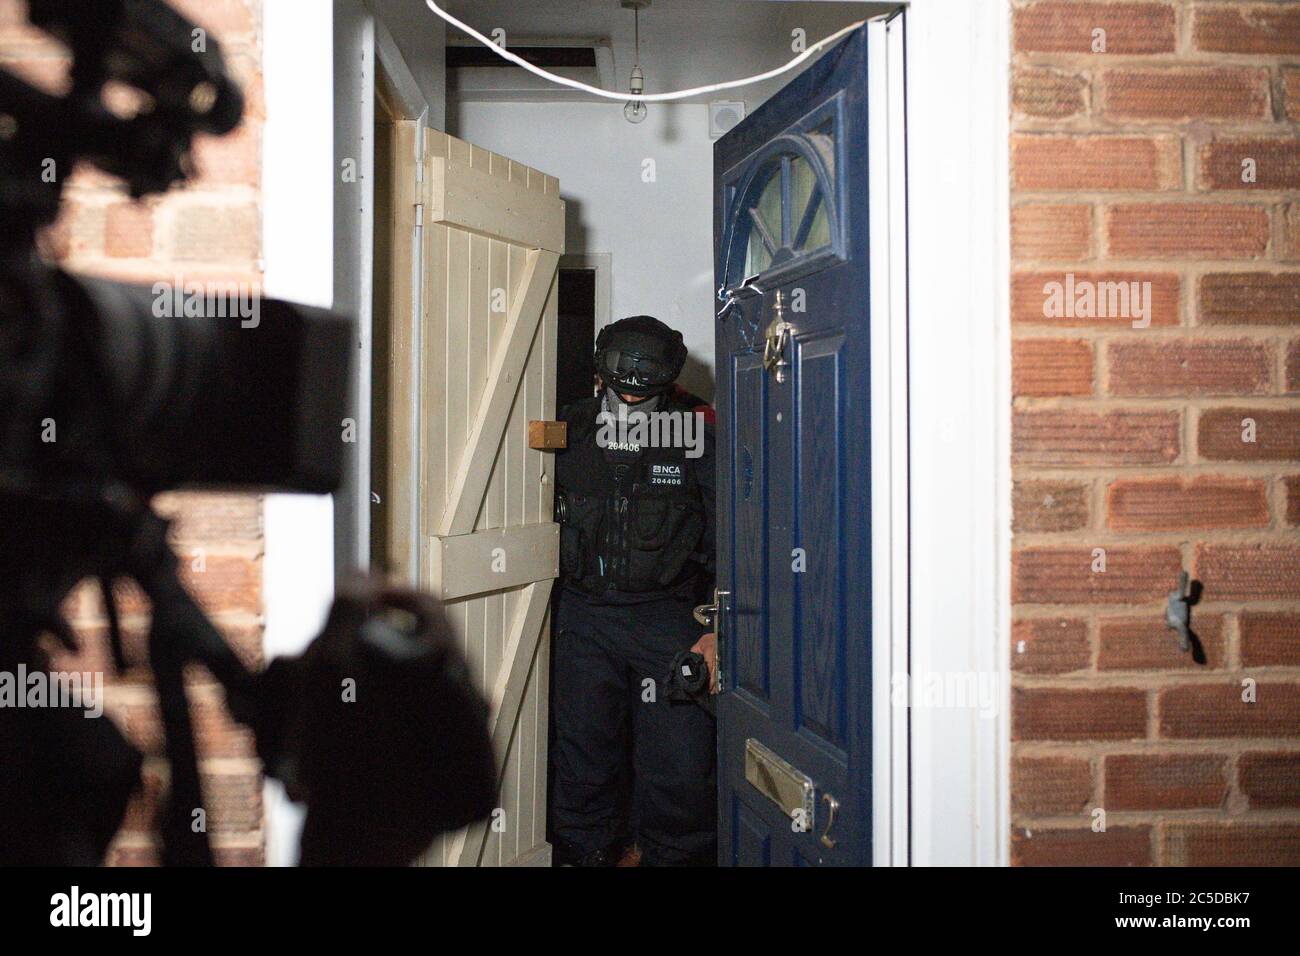 L'Agenzia nazionale per la criminalità e la polizia partecipano al raid su un immobile a Birmingham il 26/06/20 in relazione ad un'indagine su Encrochat, un sistema di comunicazione criptato di grado militare utilizzato da criminali organizzati che commerciano droghe e armi. Fino al giugno 16, funzionari nel Regno Unito avevano arrestato 307 sospetti, di cui 69 erano stati accusati, recuperato 106 dispositivi Encrochat e sequestrato più di 36 milioni di GBP e 916,000 euro (826,000 GBP) in contanti. Foto Stock